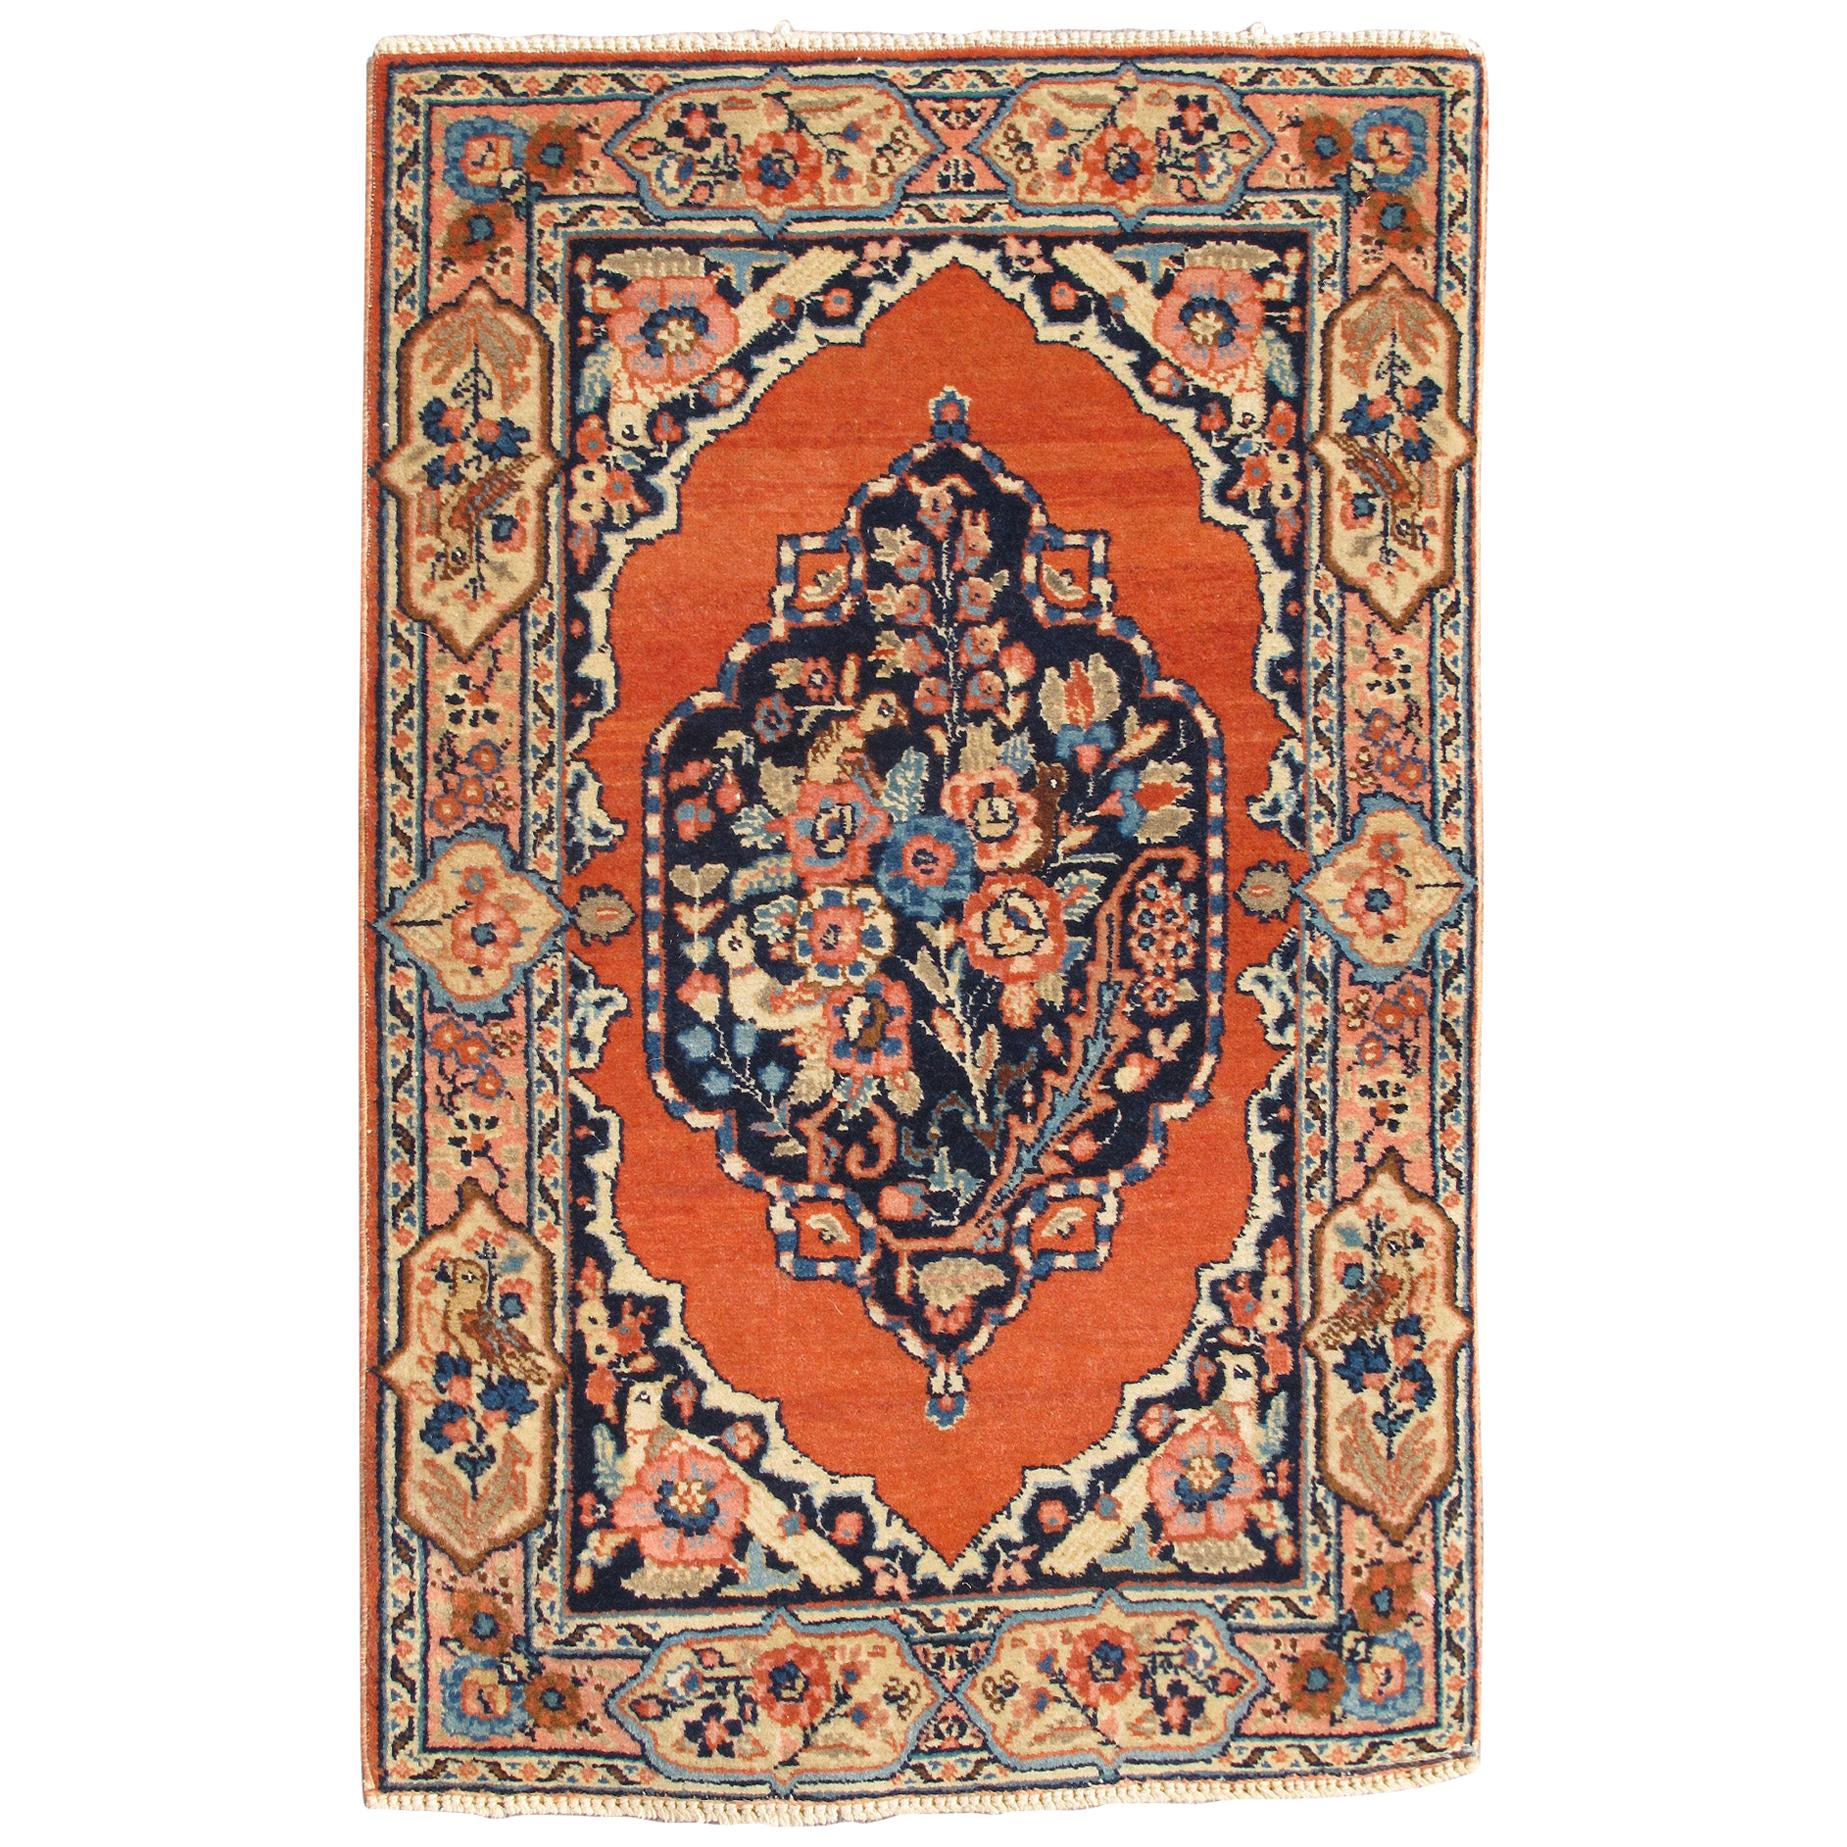 Petit tapis persan ancien de Tabriz à motifs floraux ornés en orange brûlé